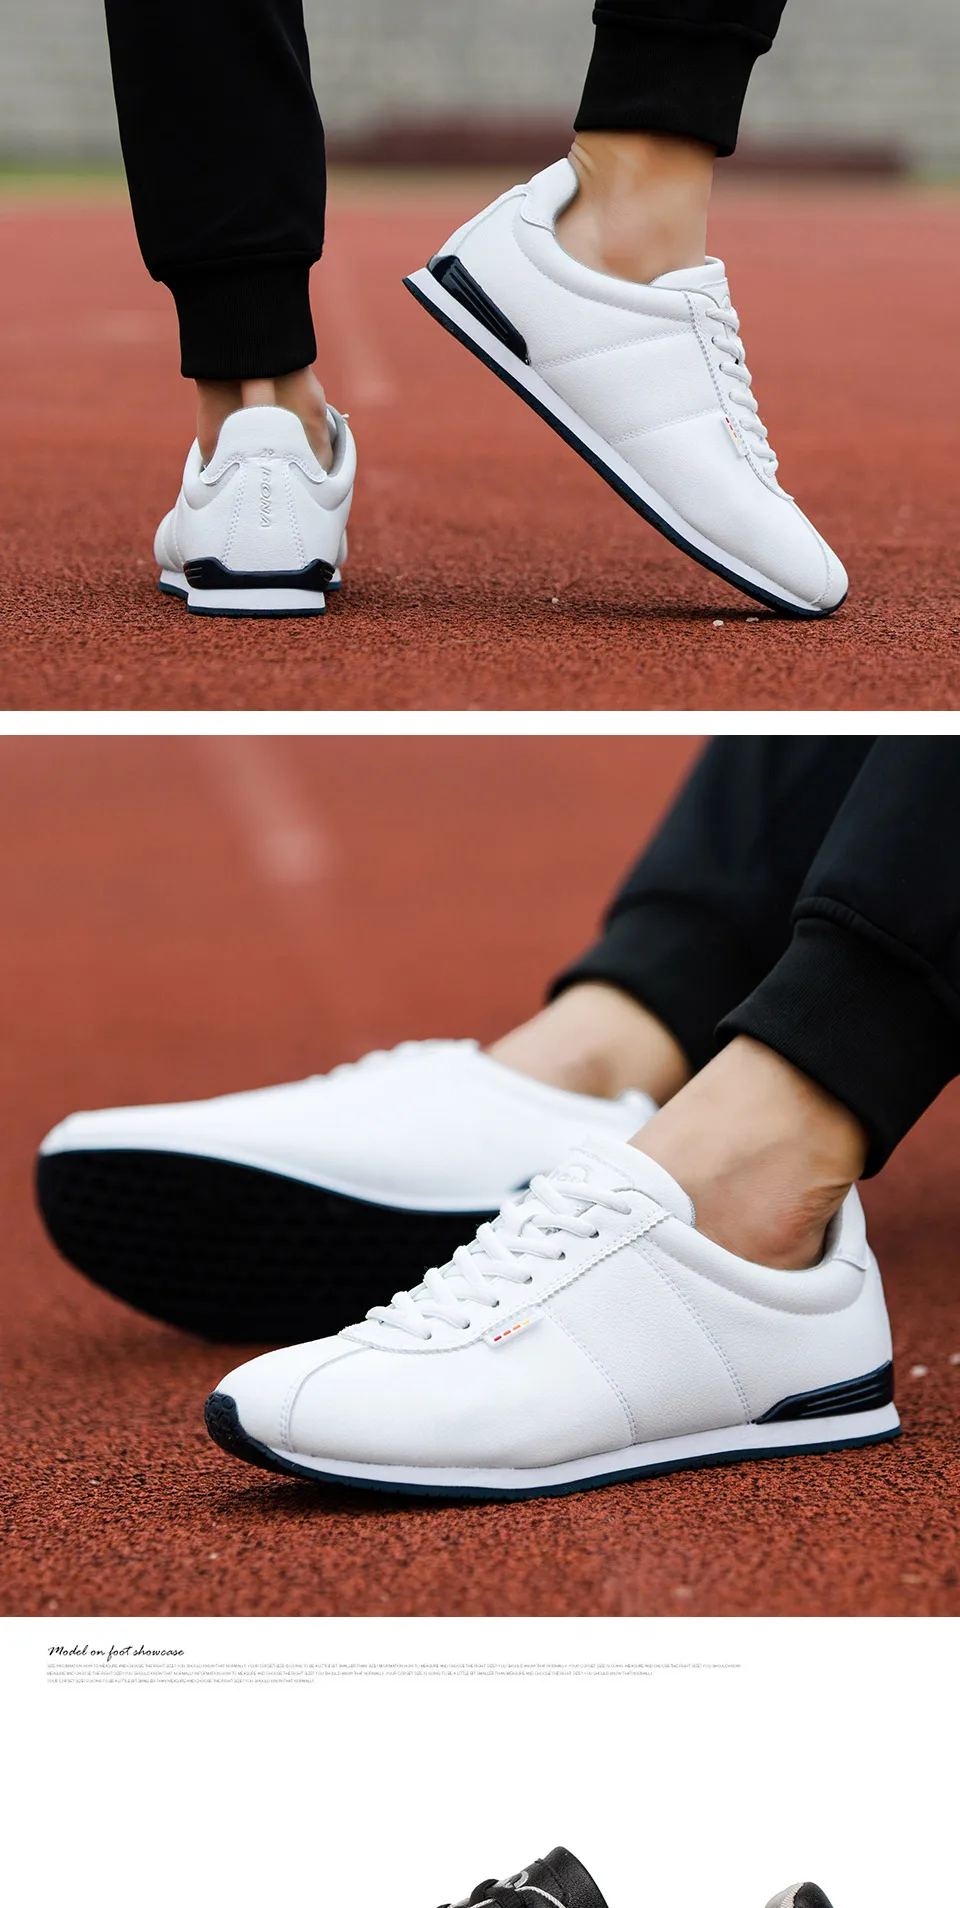 BONA/Новинка; классические стильные мужские кроссовки для бега; уличные беговые кроссовки на шнуровке; спортивная обувь; удобная спортивная обувь;